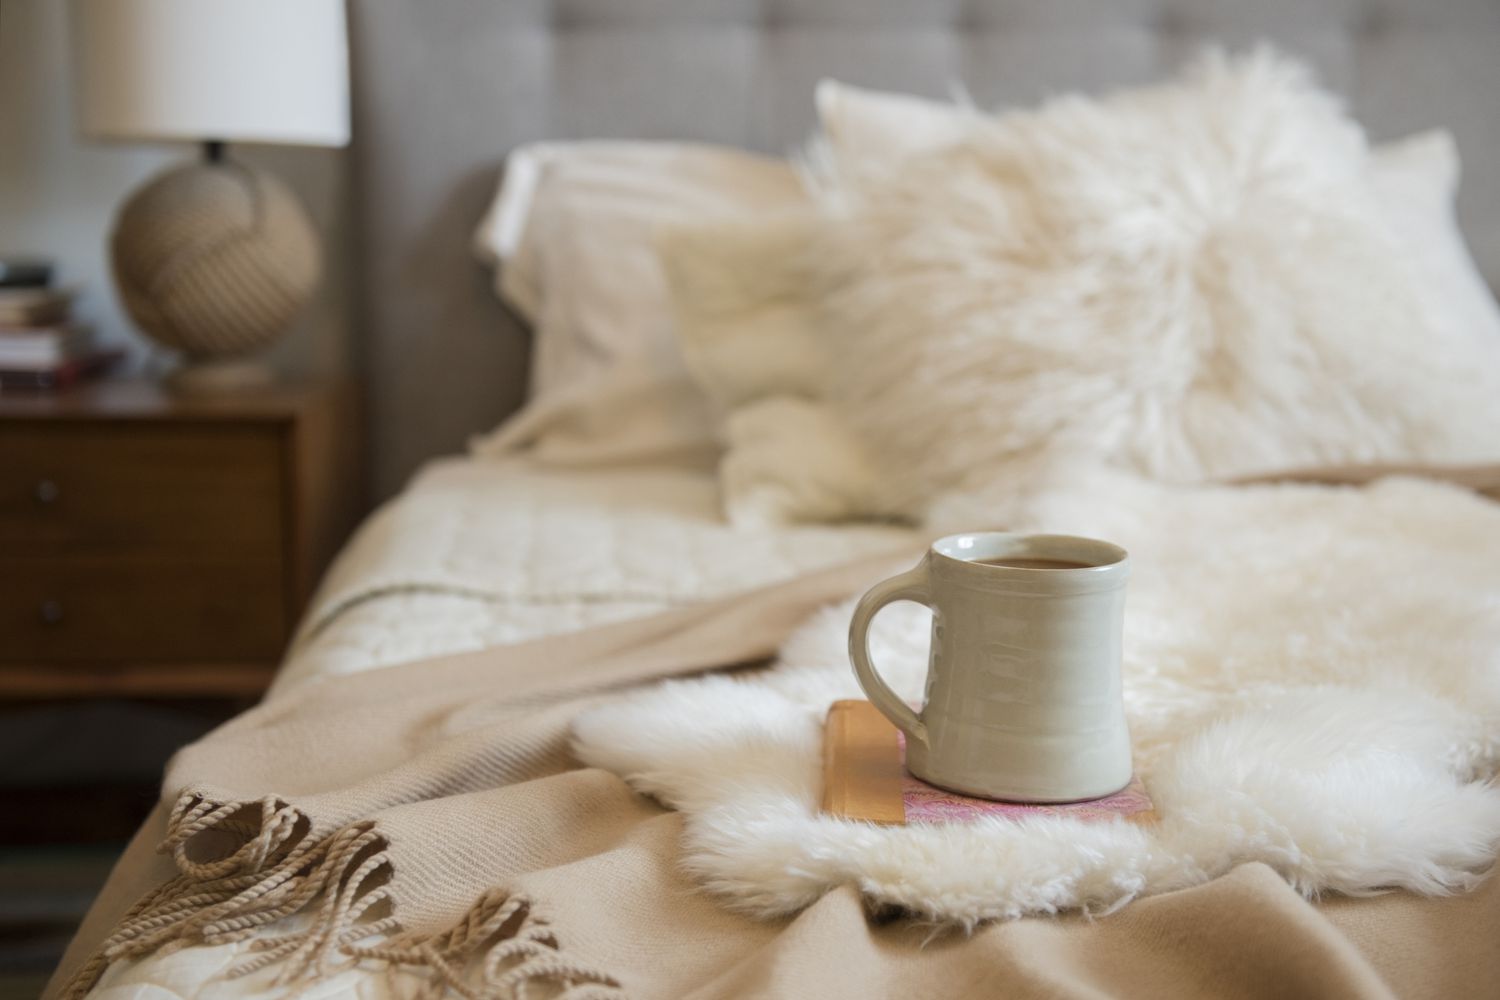 Acogedora cama con lujosas mantas arrojadizas y un cubo de café encima de un libro.